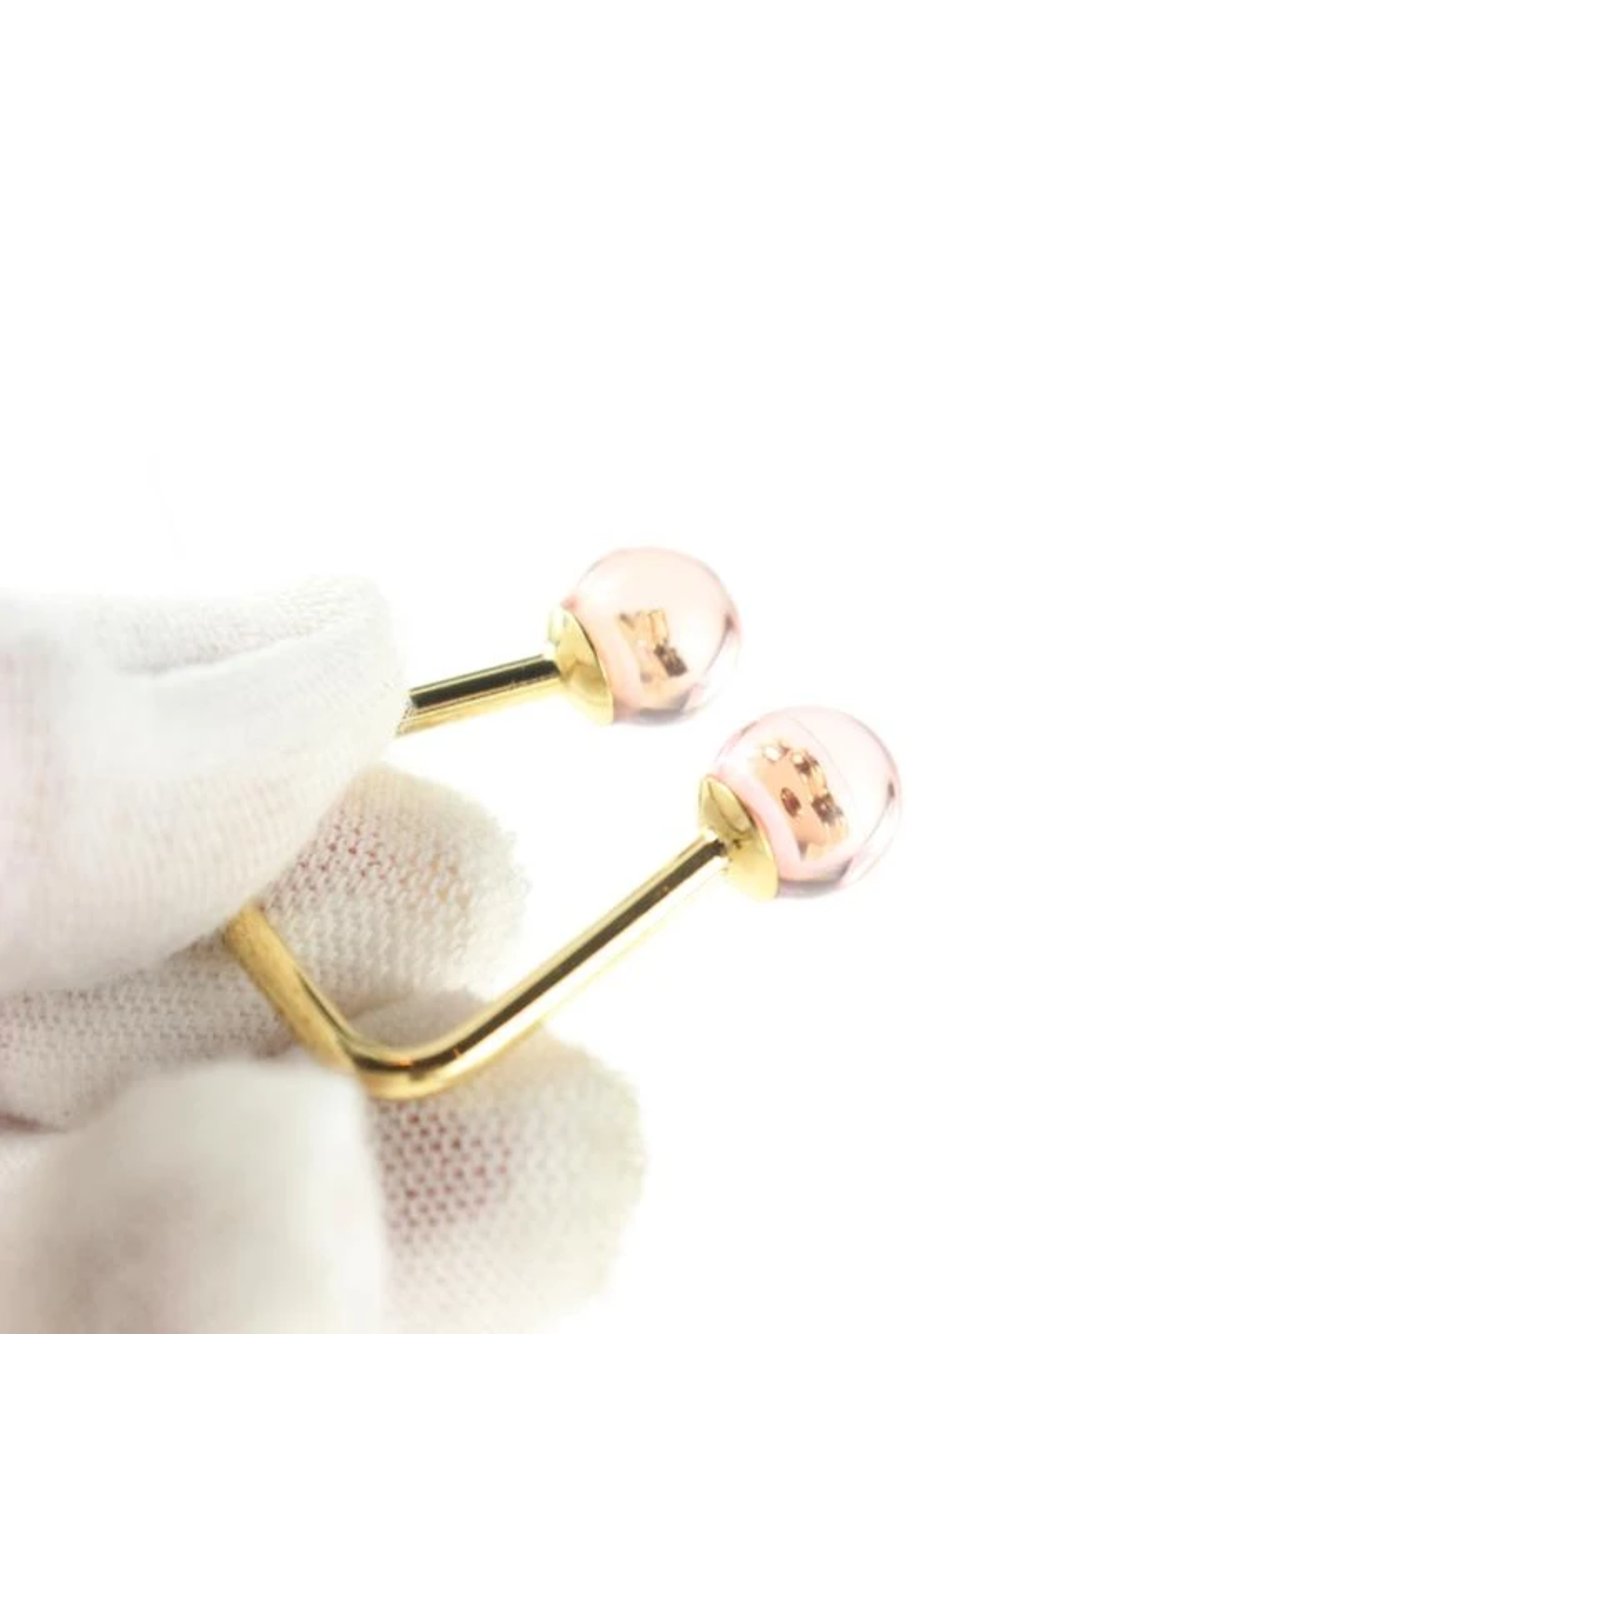 Louis Vuitton Inclusion Fleur Bubble Ring - Gold-Tone Metal